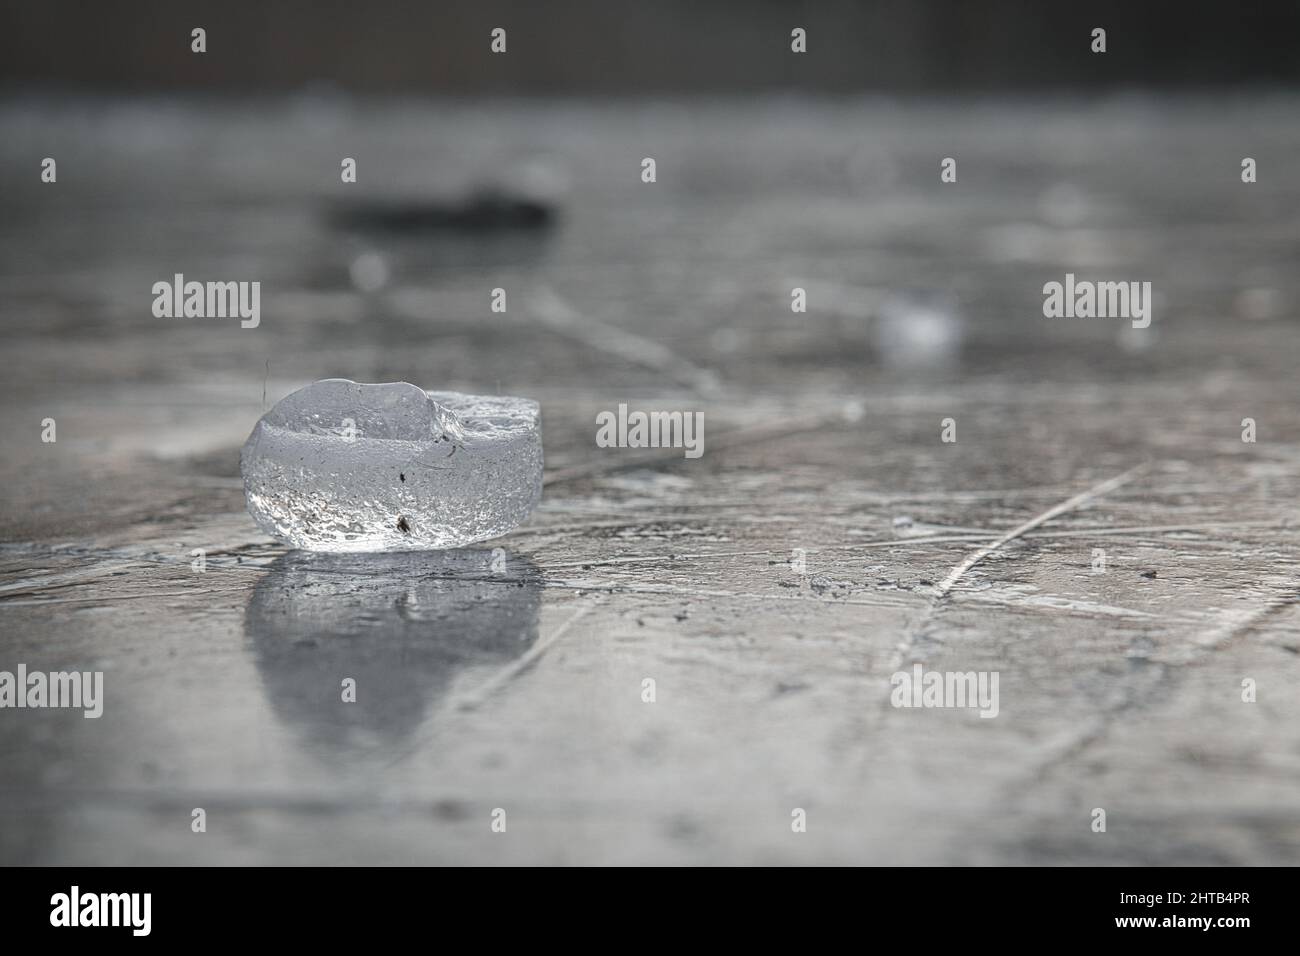 Nahaufnahme eines Eises auf einem nassen Boden Stockfoto